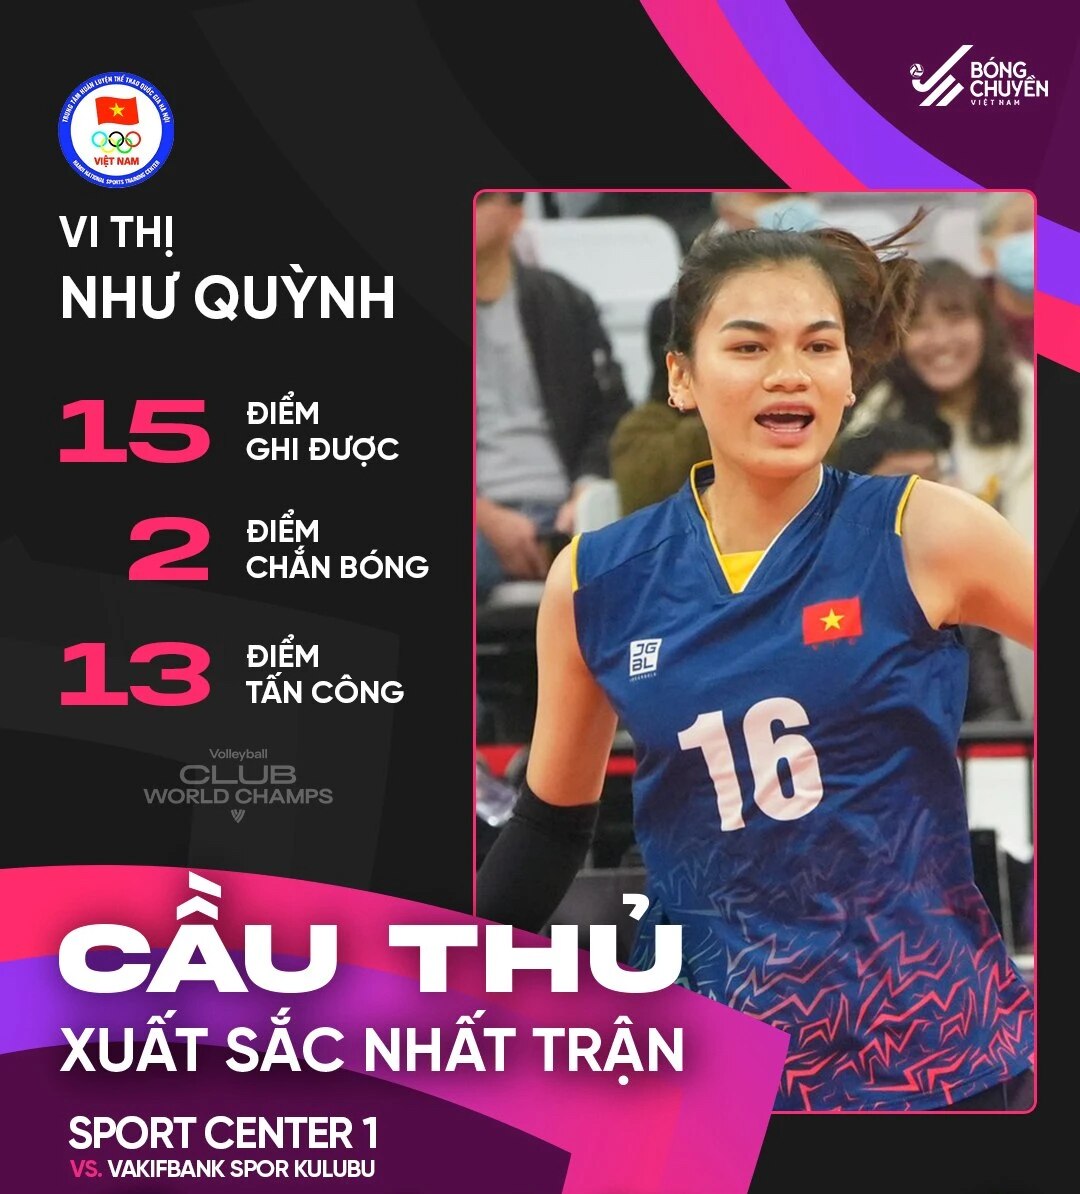 Điểm sáng của đội tuyển bóng chuyền nữ Việt Nam ở đấu trường thế giới - Ảnh 1.